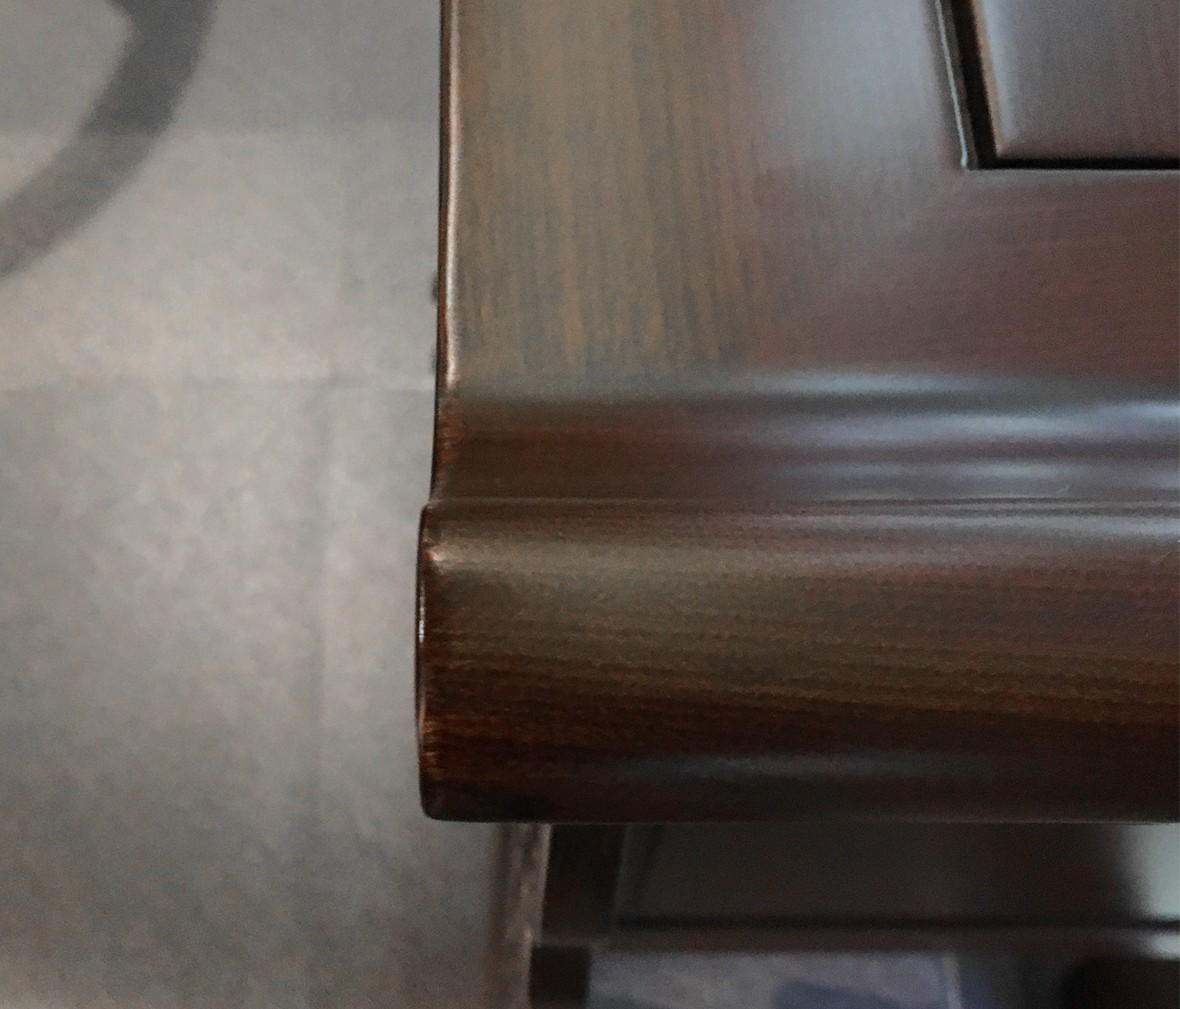 祥华坊家具 XJD-ZJ01913型号电话桌 中式古典实木家具